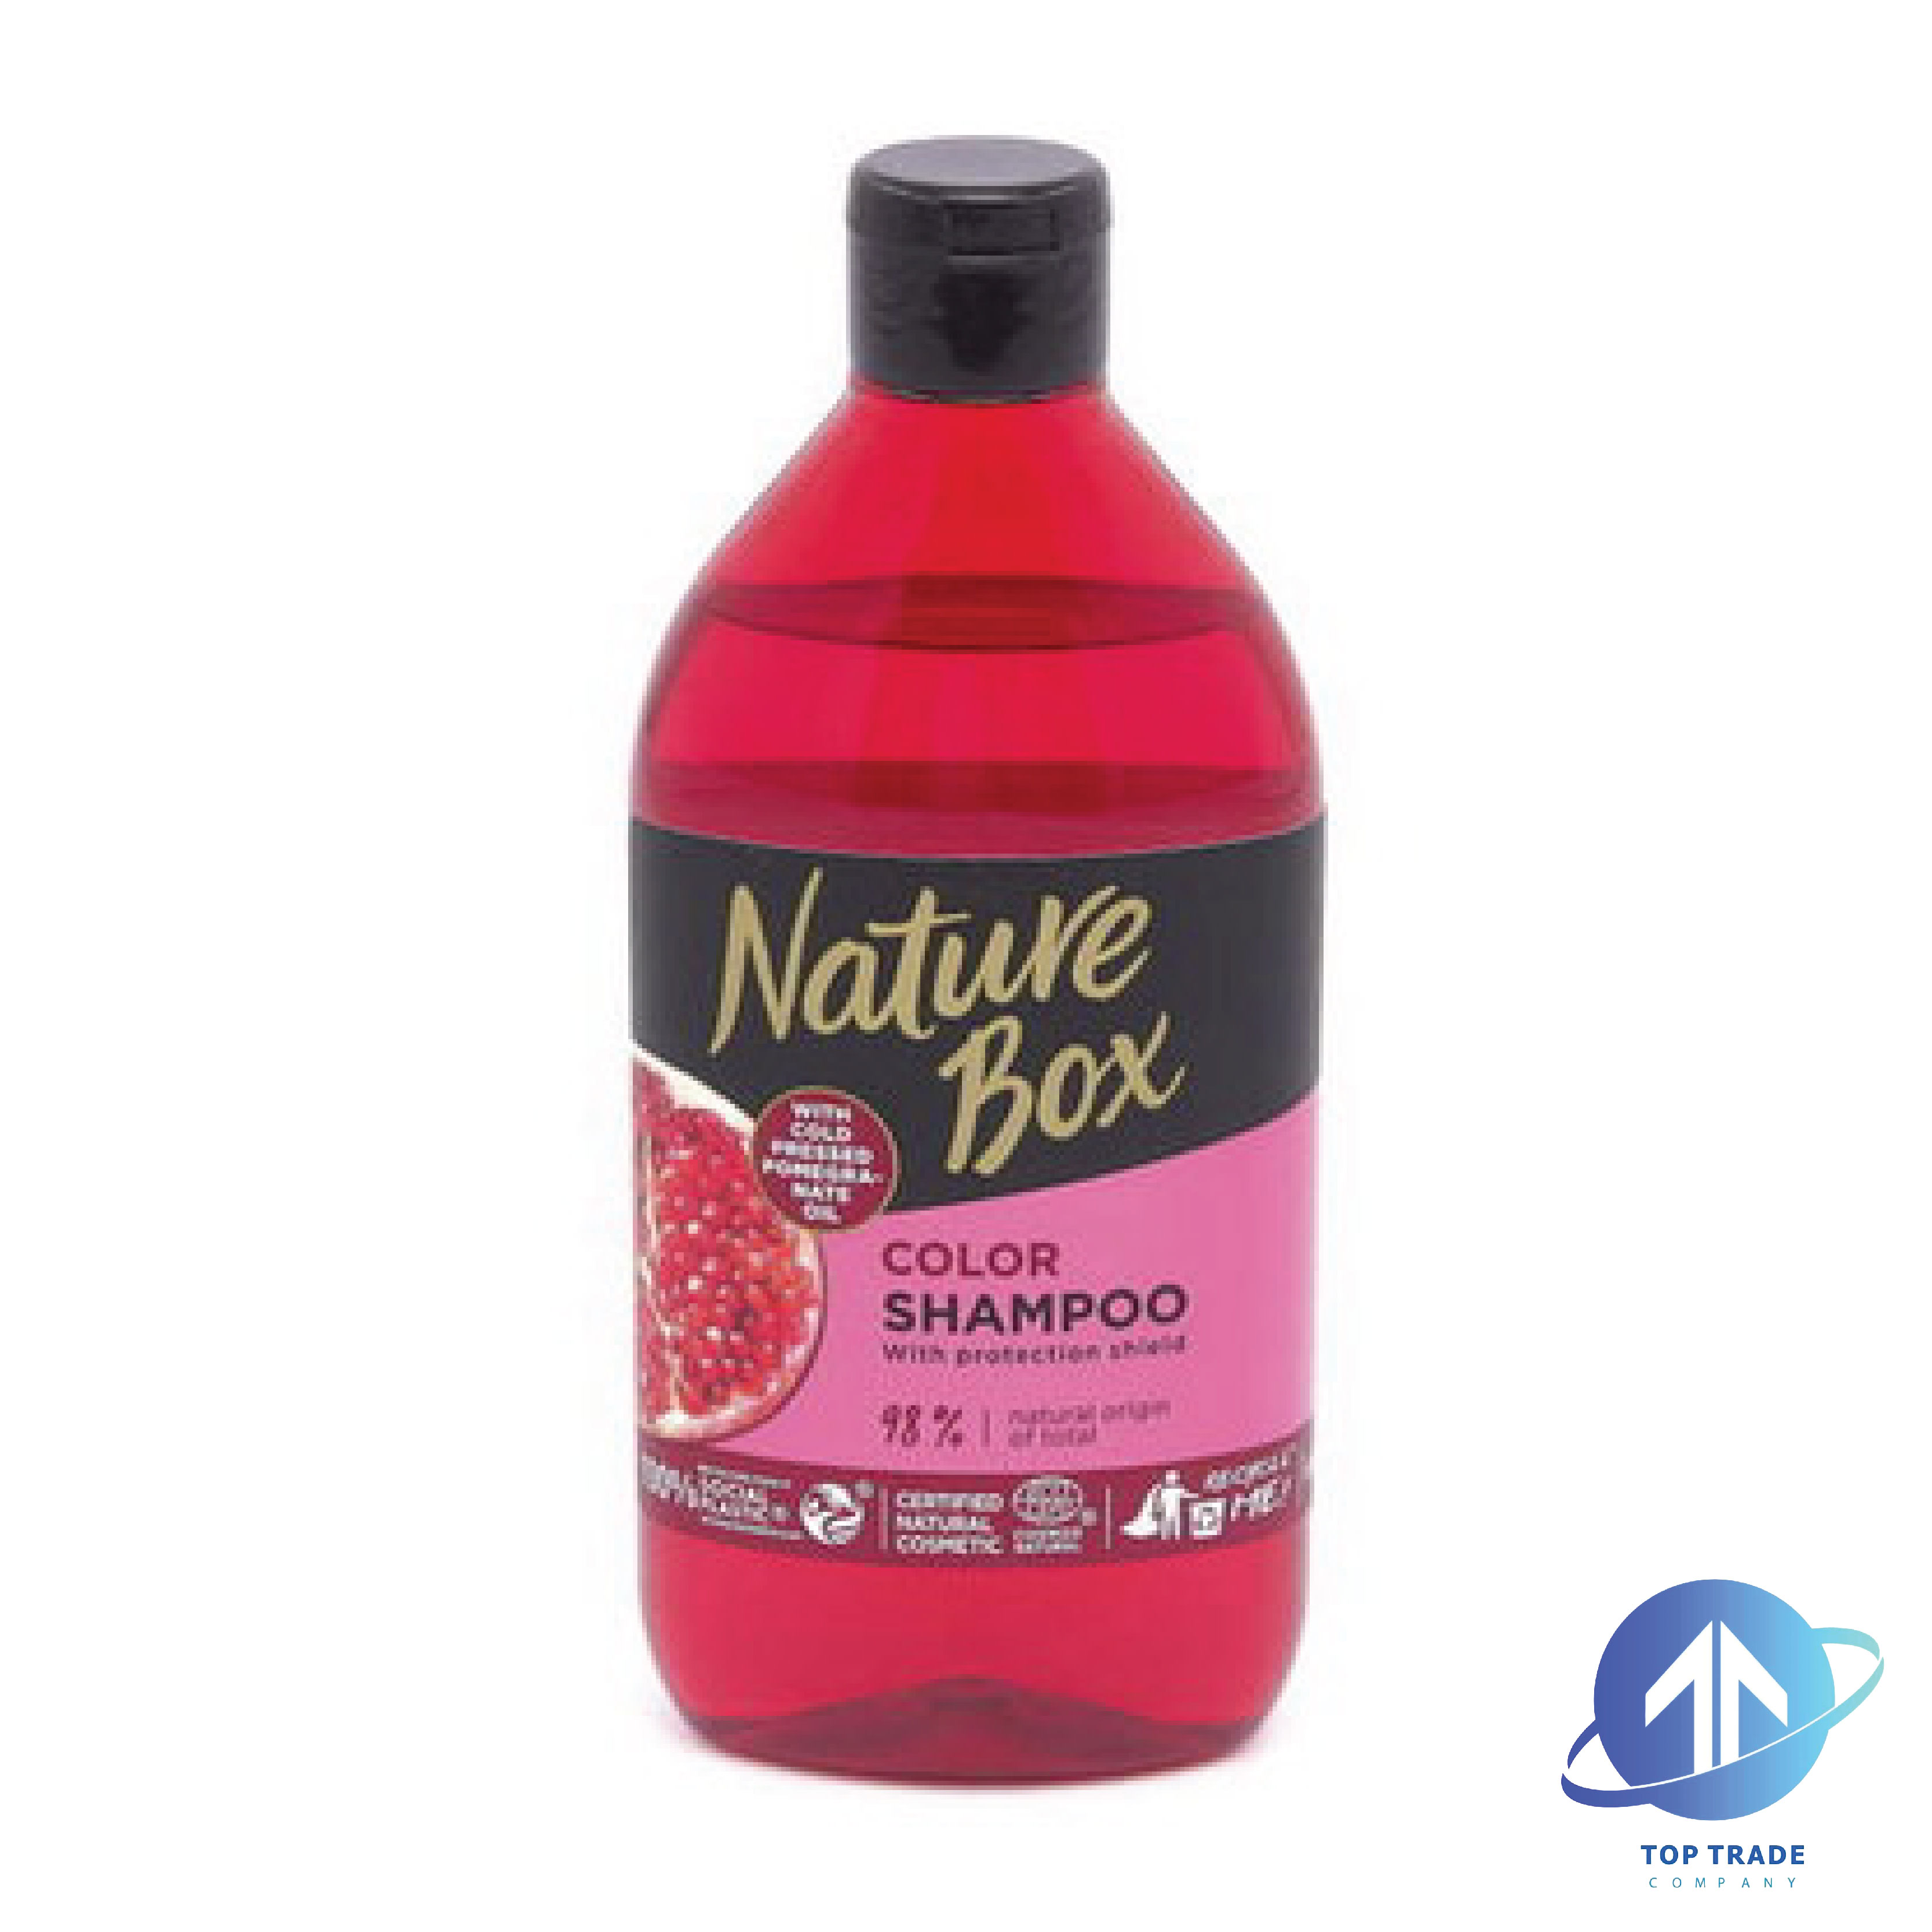 Nature box shampoo Pomegranate Oil 385ml